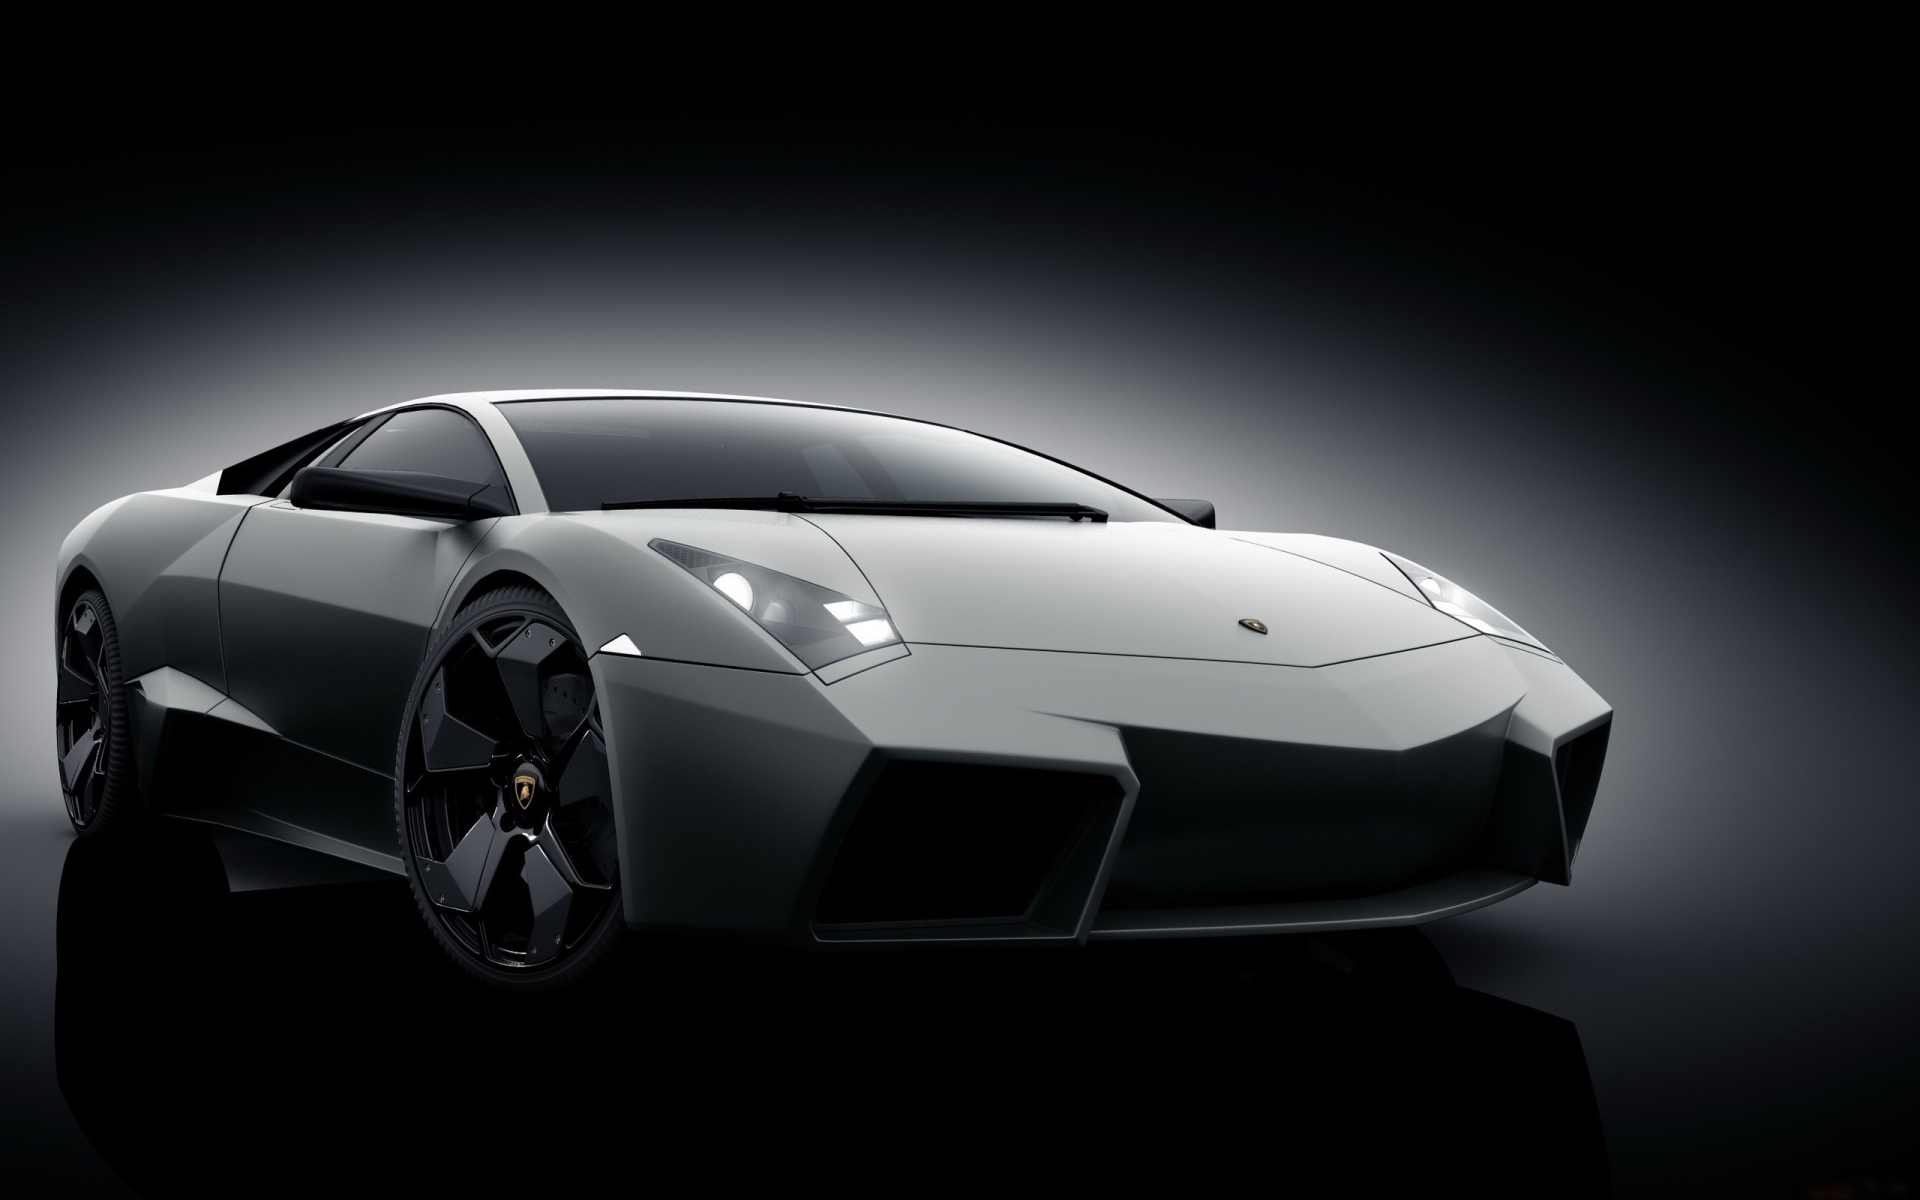 Grey Lamborghini Reventon for 1920 x 1200 widescreen resolution